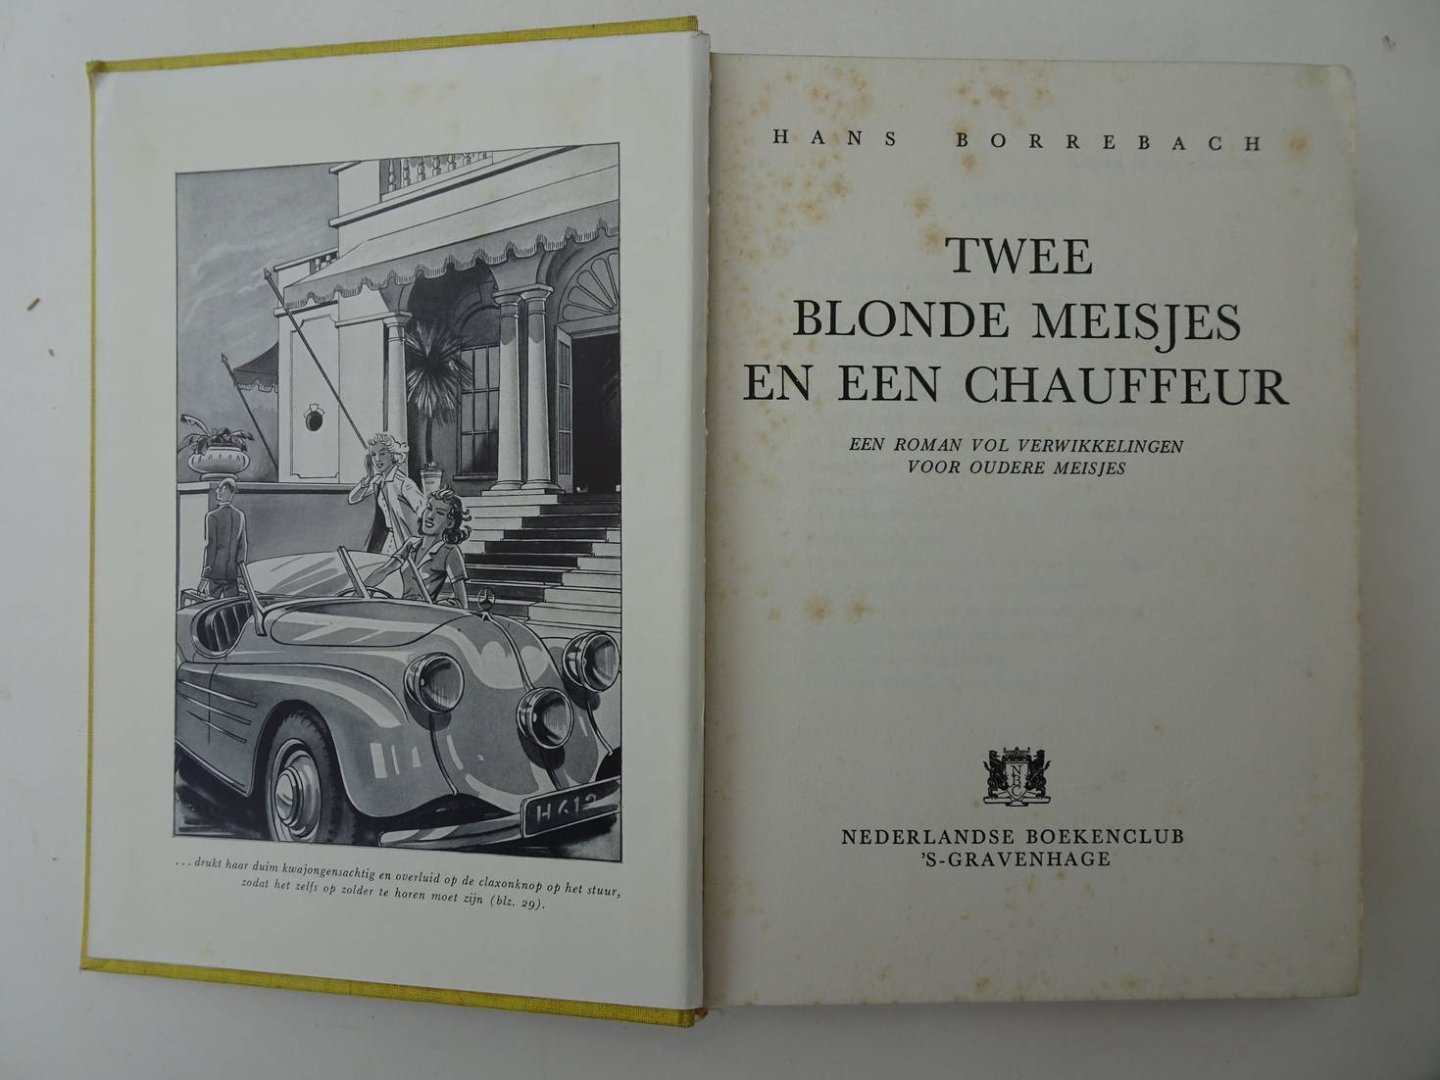 Borrebach, Hans. - Twee blonde meisjes en een chauffeur. Een roman vol verwikkelingen voor oudere meisjes.